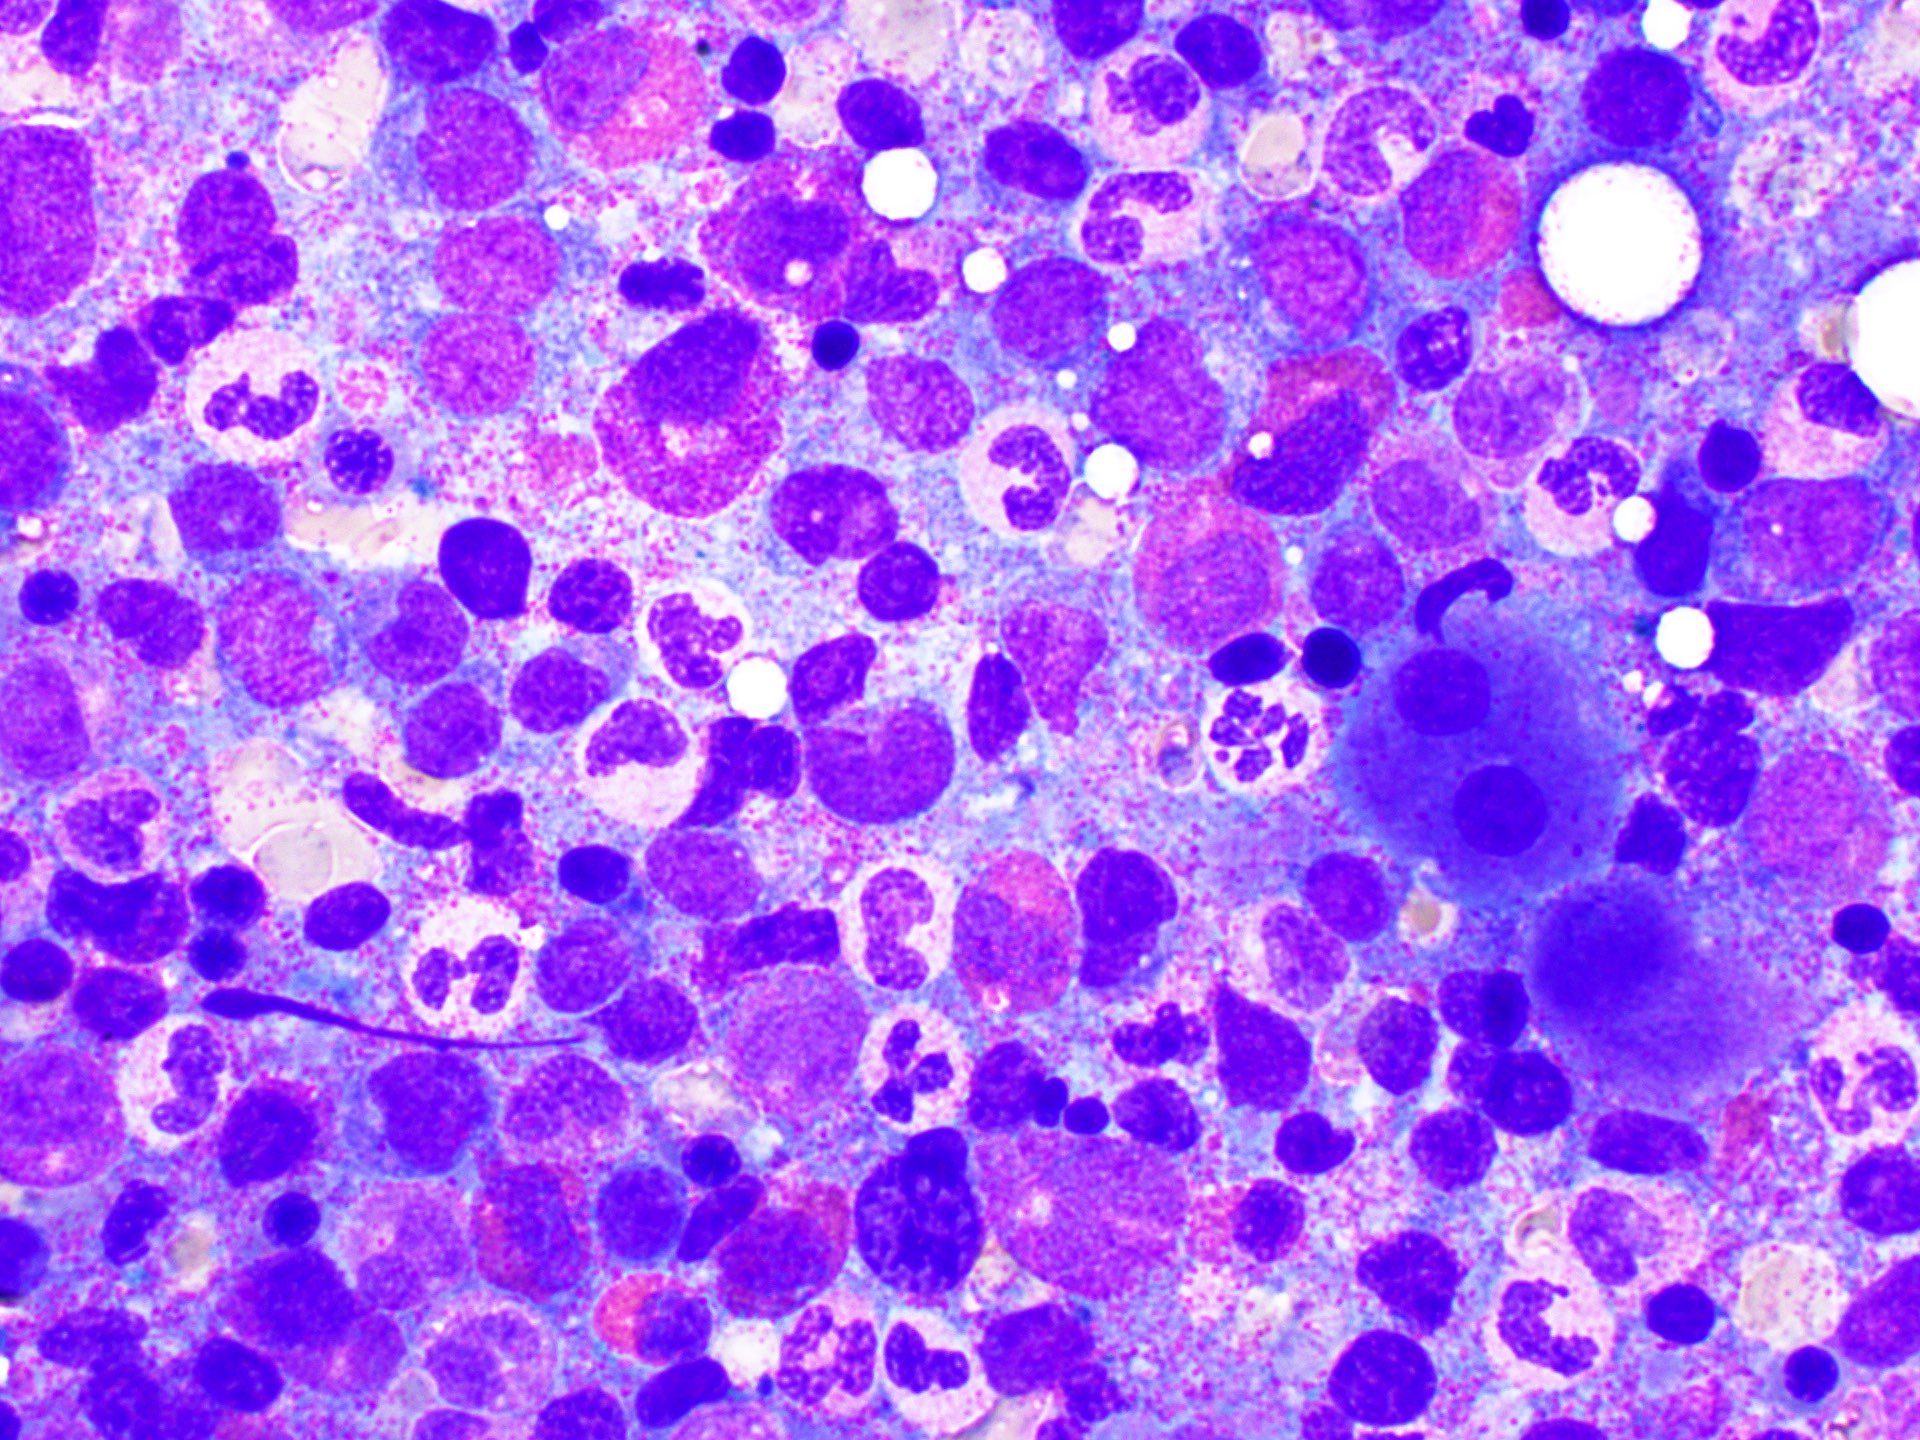 Dysplastic megakaryocytes and neutrophils